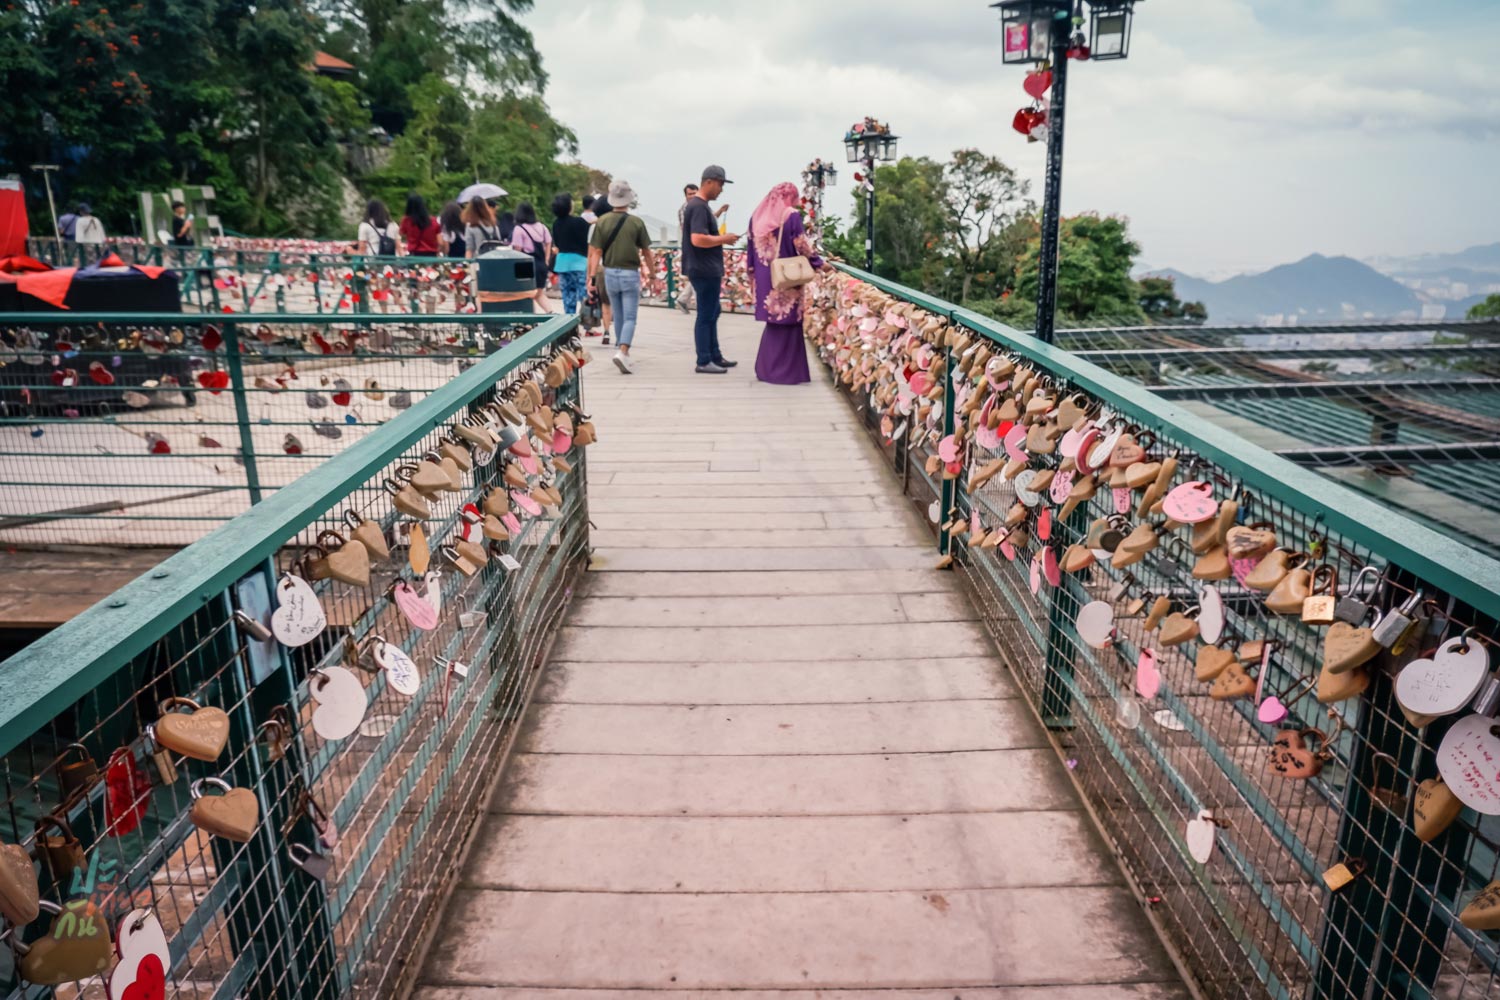 สะพานกุญแจรัก (Love Lock Bridge)